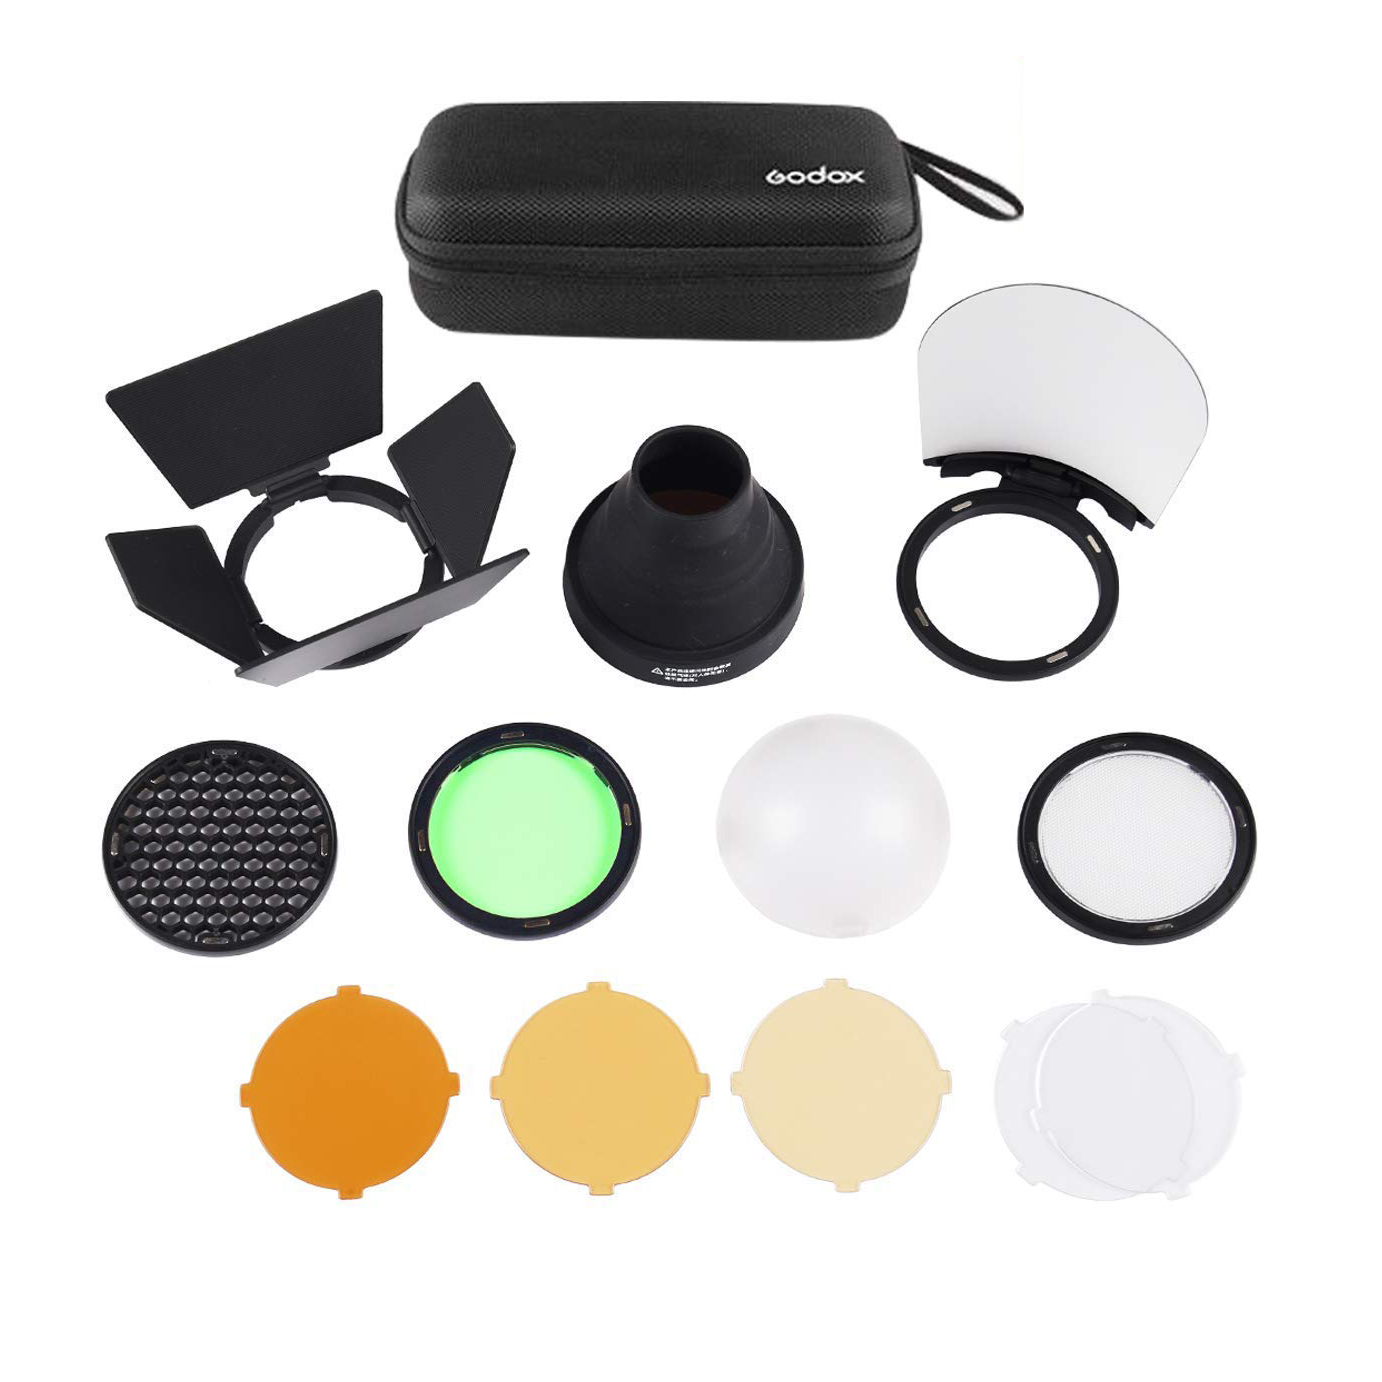 Kit de accesorios Godox AK-R1, para flashes de cabeza redonda tipo V1